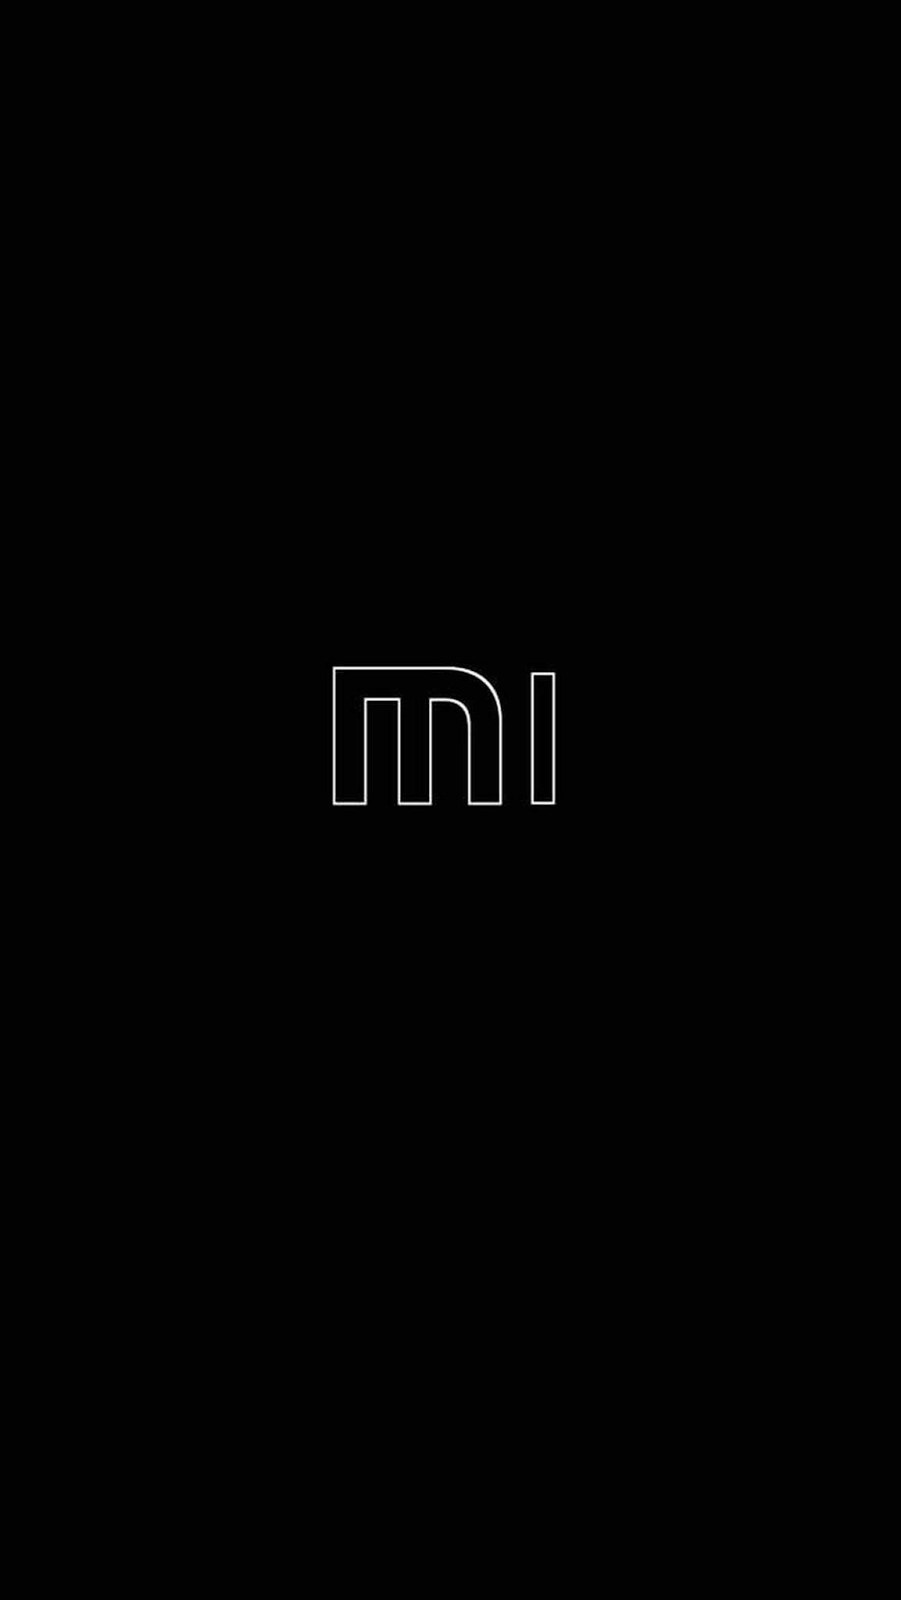 Xiaomi надпись на экране. Xiaomi mi логотип. Xiaomi логотип черный. Логотип Xiaomi на черном фоне. Черные обои.